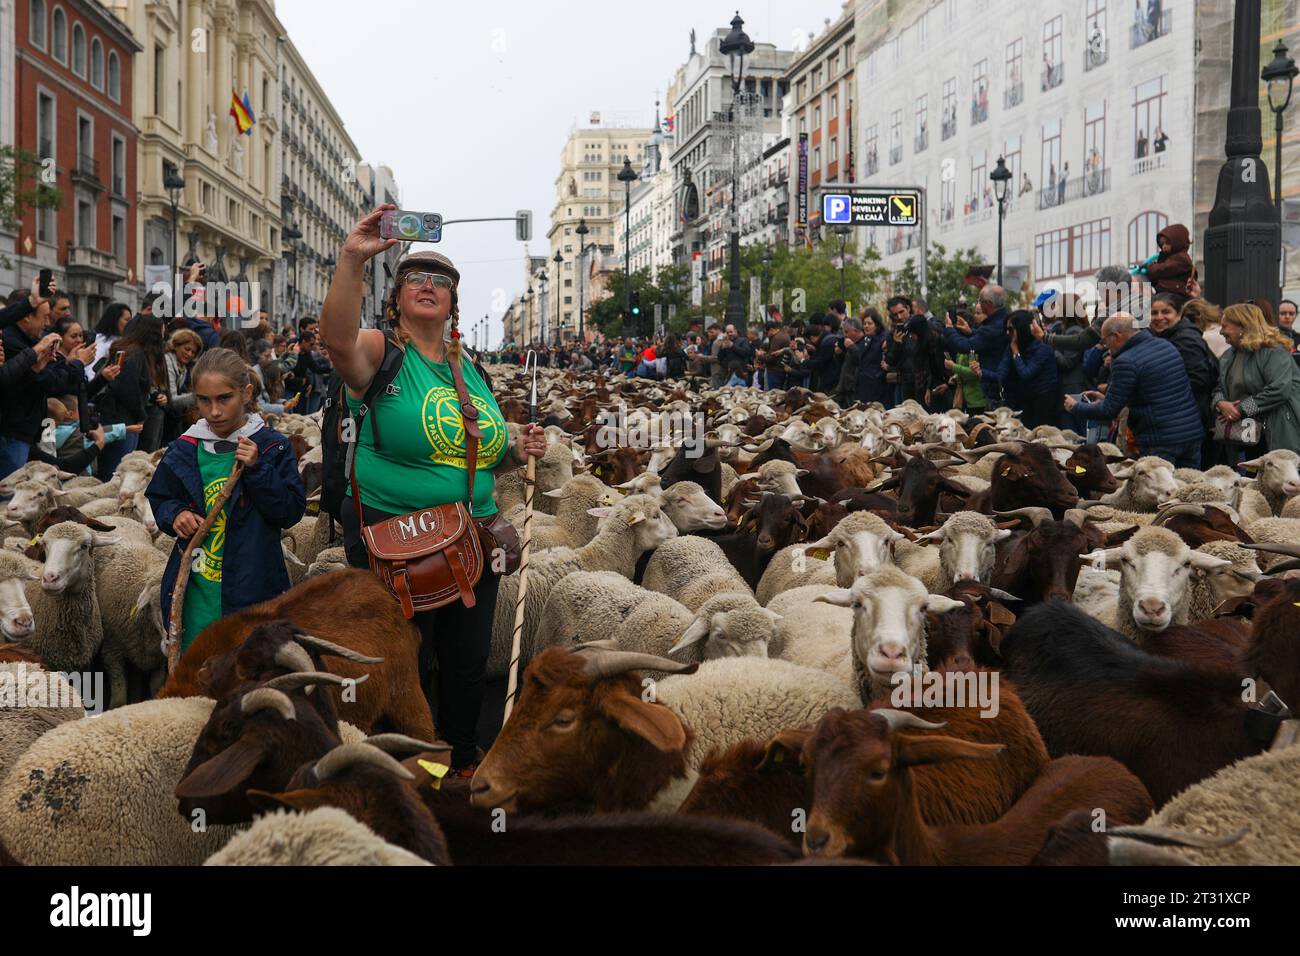 Eine Hirtin, umgeben von Schafen, macht ein Selfie mit ihrem Handy während des Wanderfestes im Zentrum von Madrid. Ein weiteres Jahr überquerten die Schafe das Zentrum von Madrid in einer neuen Ausgabe des Transhumance Festivals. Das Festival wird seit 1994 gefeiert und füllt die Hauptschlagadern der spanischen Hauptstadt mit Schafen, um eine umfangreiche Tierhaltung als Instrument zur Erhaltung der biologischen Vielfalt und zur Bekämpfung des Klimawandels zu rechtfertigen. In diesem Jahr sind etwa 1.100 Schafe durch das Zentrum der Hauptstadt gezogen. Stockfoto